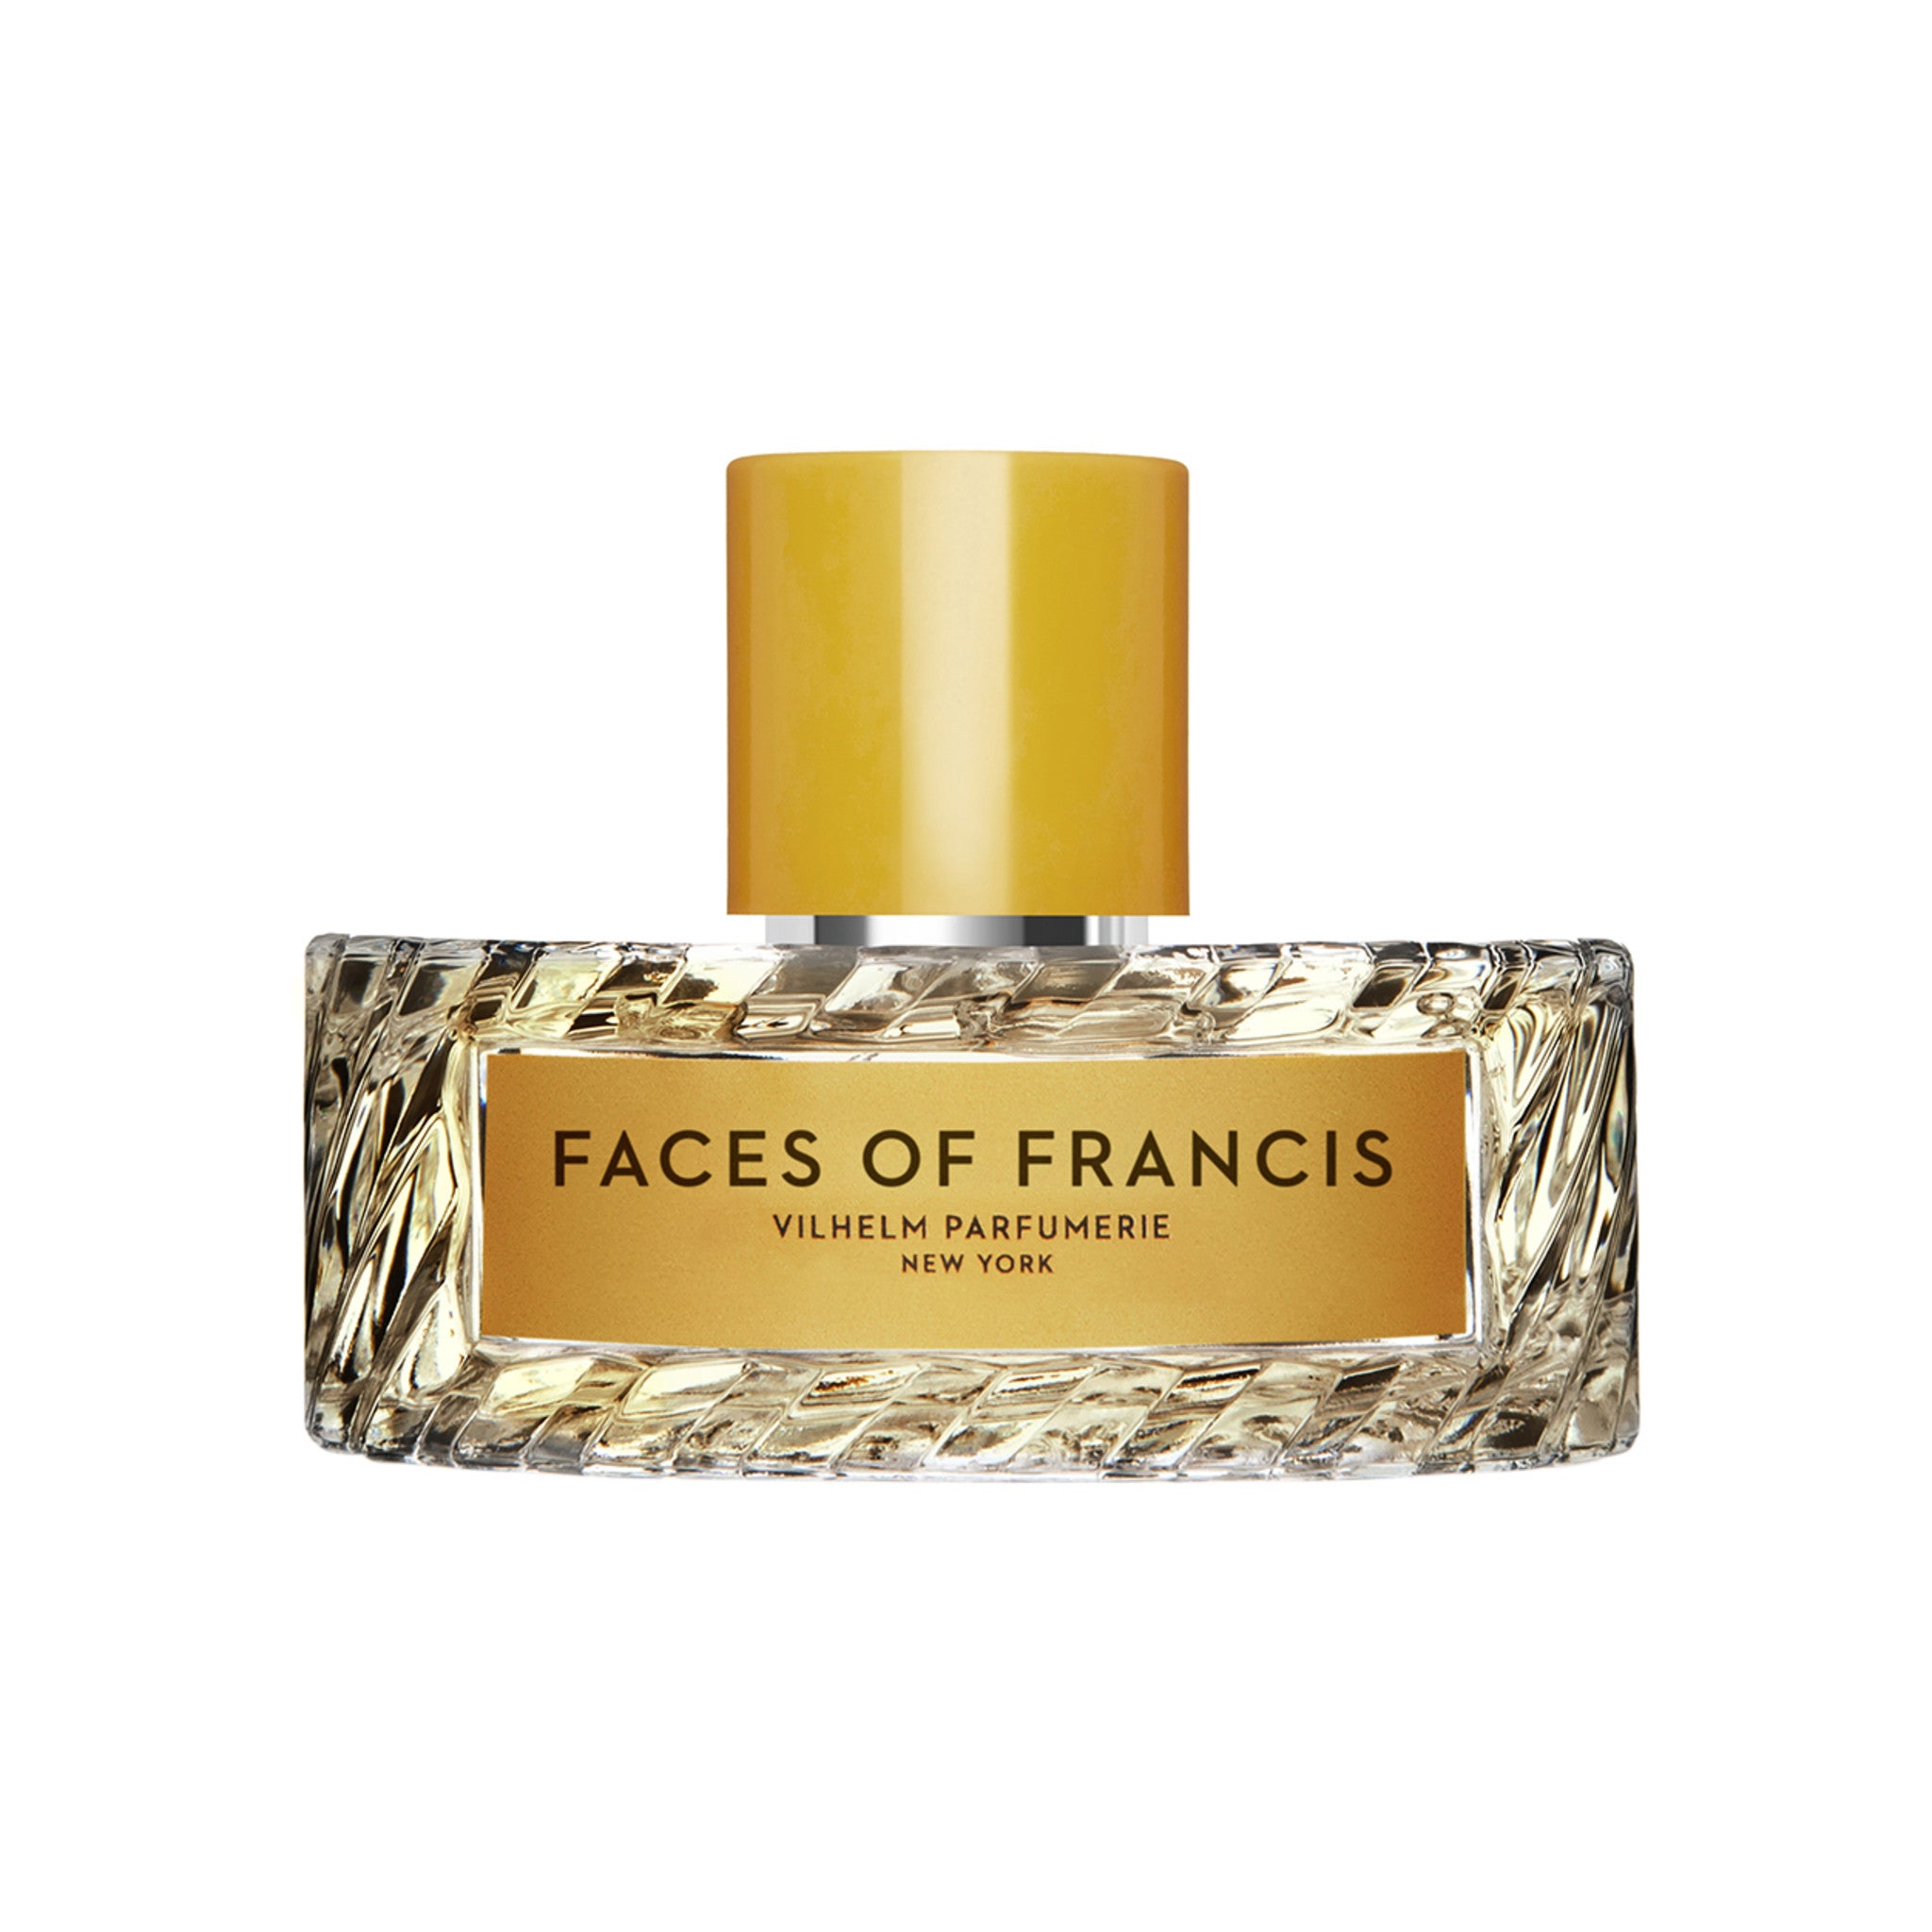 Vilhelm Parfumerie Faces of Francis Eau de Parfum Size variant: 3.4 oz main image.